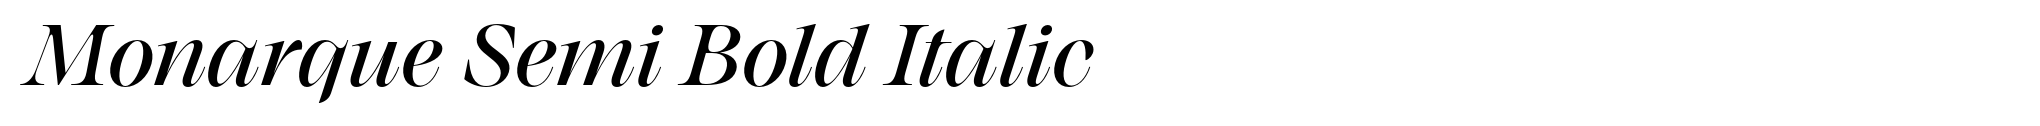 Monarque Semi Bold Italic image